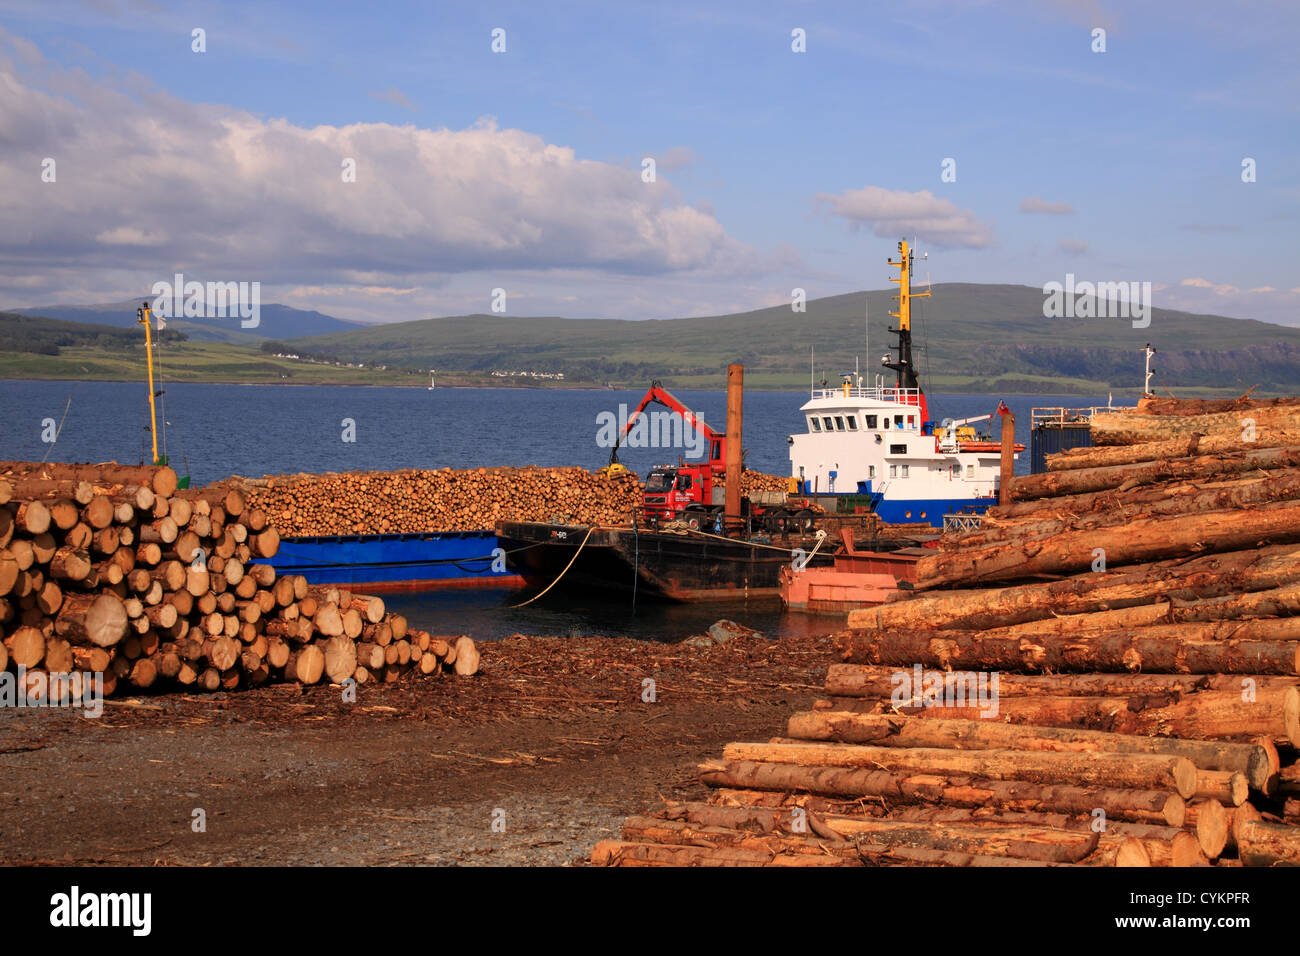 UK Ecosse Isle of Mull chargement de bois sur navire Banque D'Images